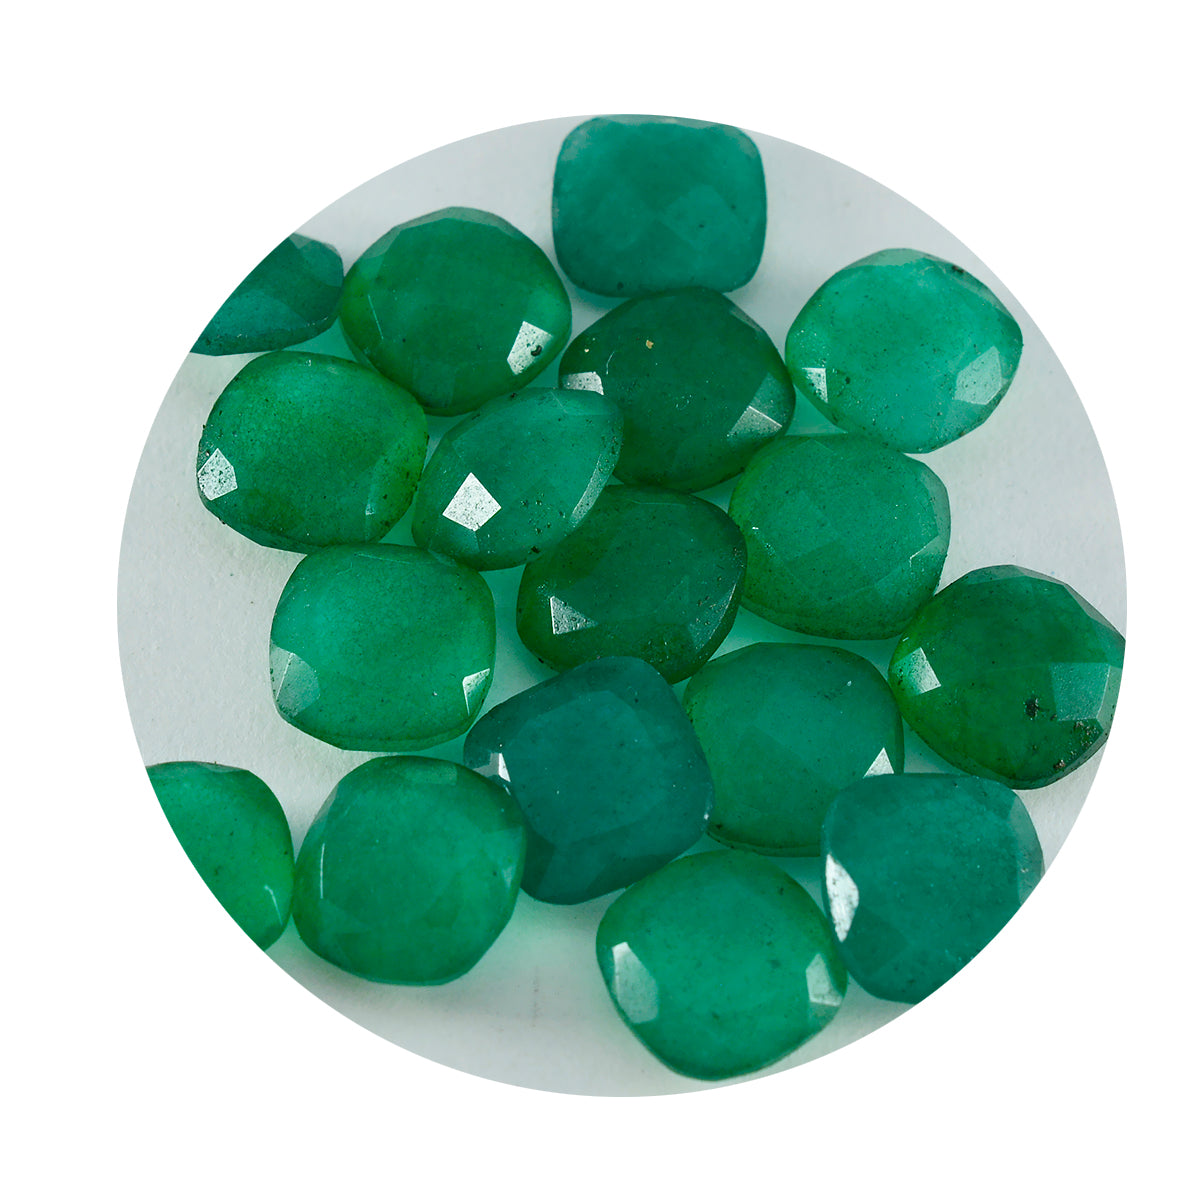 Riyogems 1 Stück echter grüner Jaspis, facettiert, 4 x 4 mm, Kissenform, A1-Qualität, lose Edelsteine